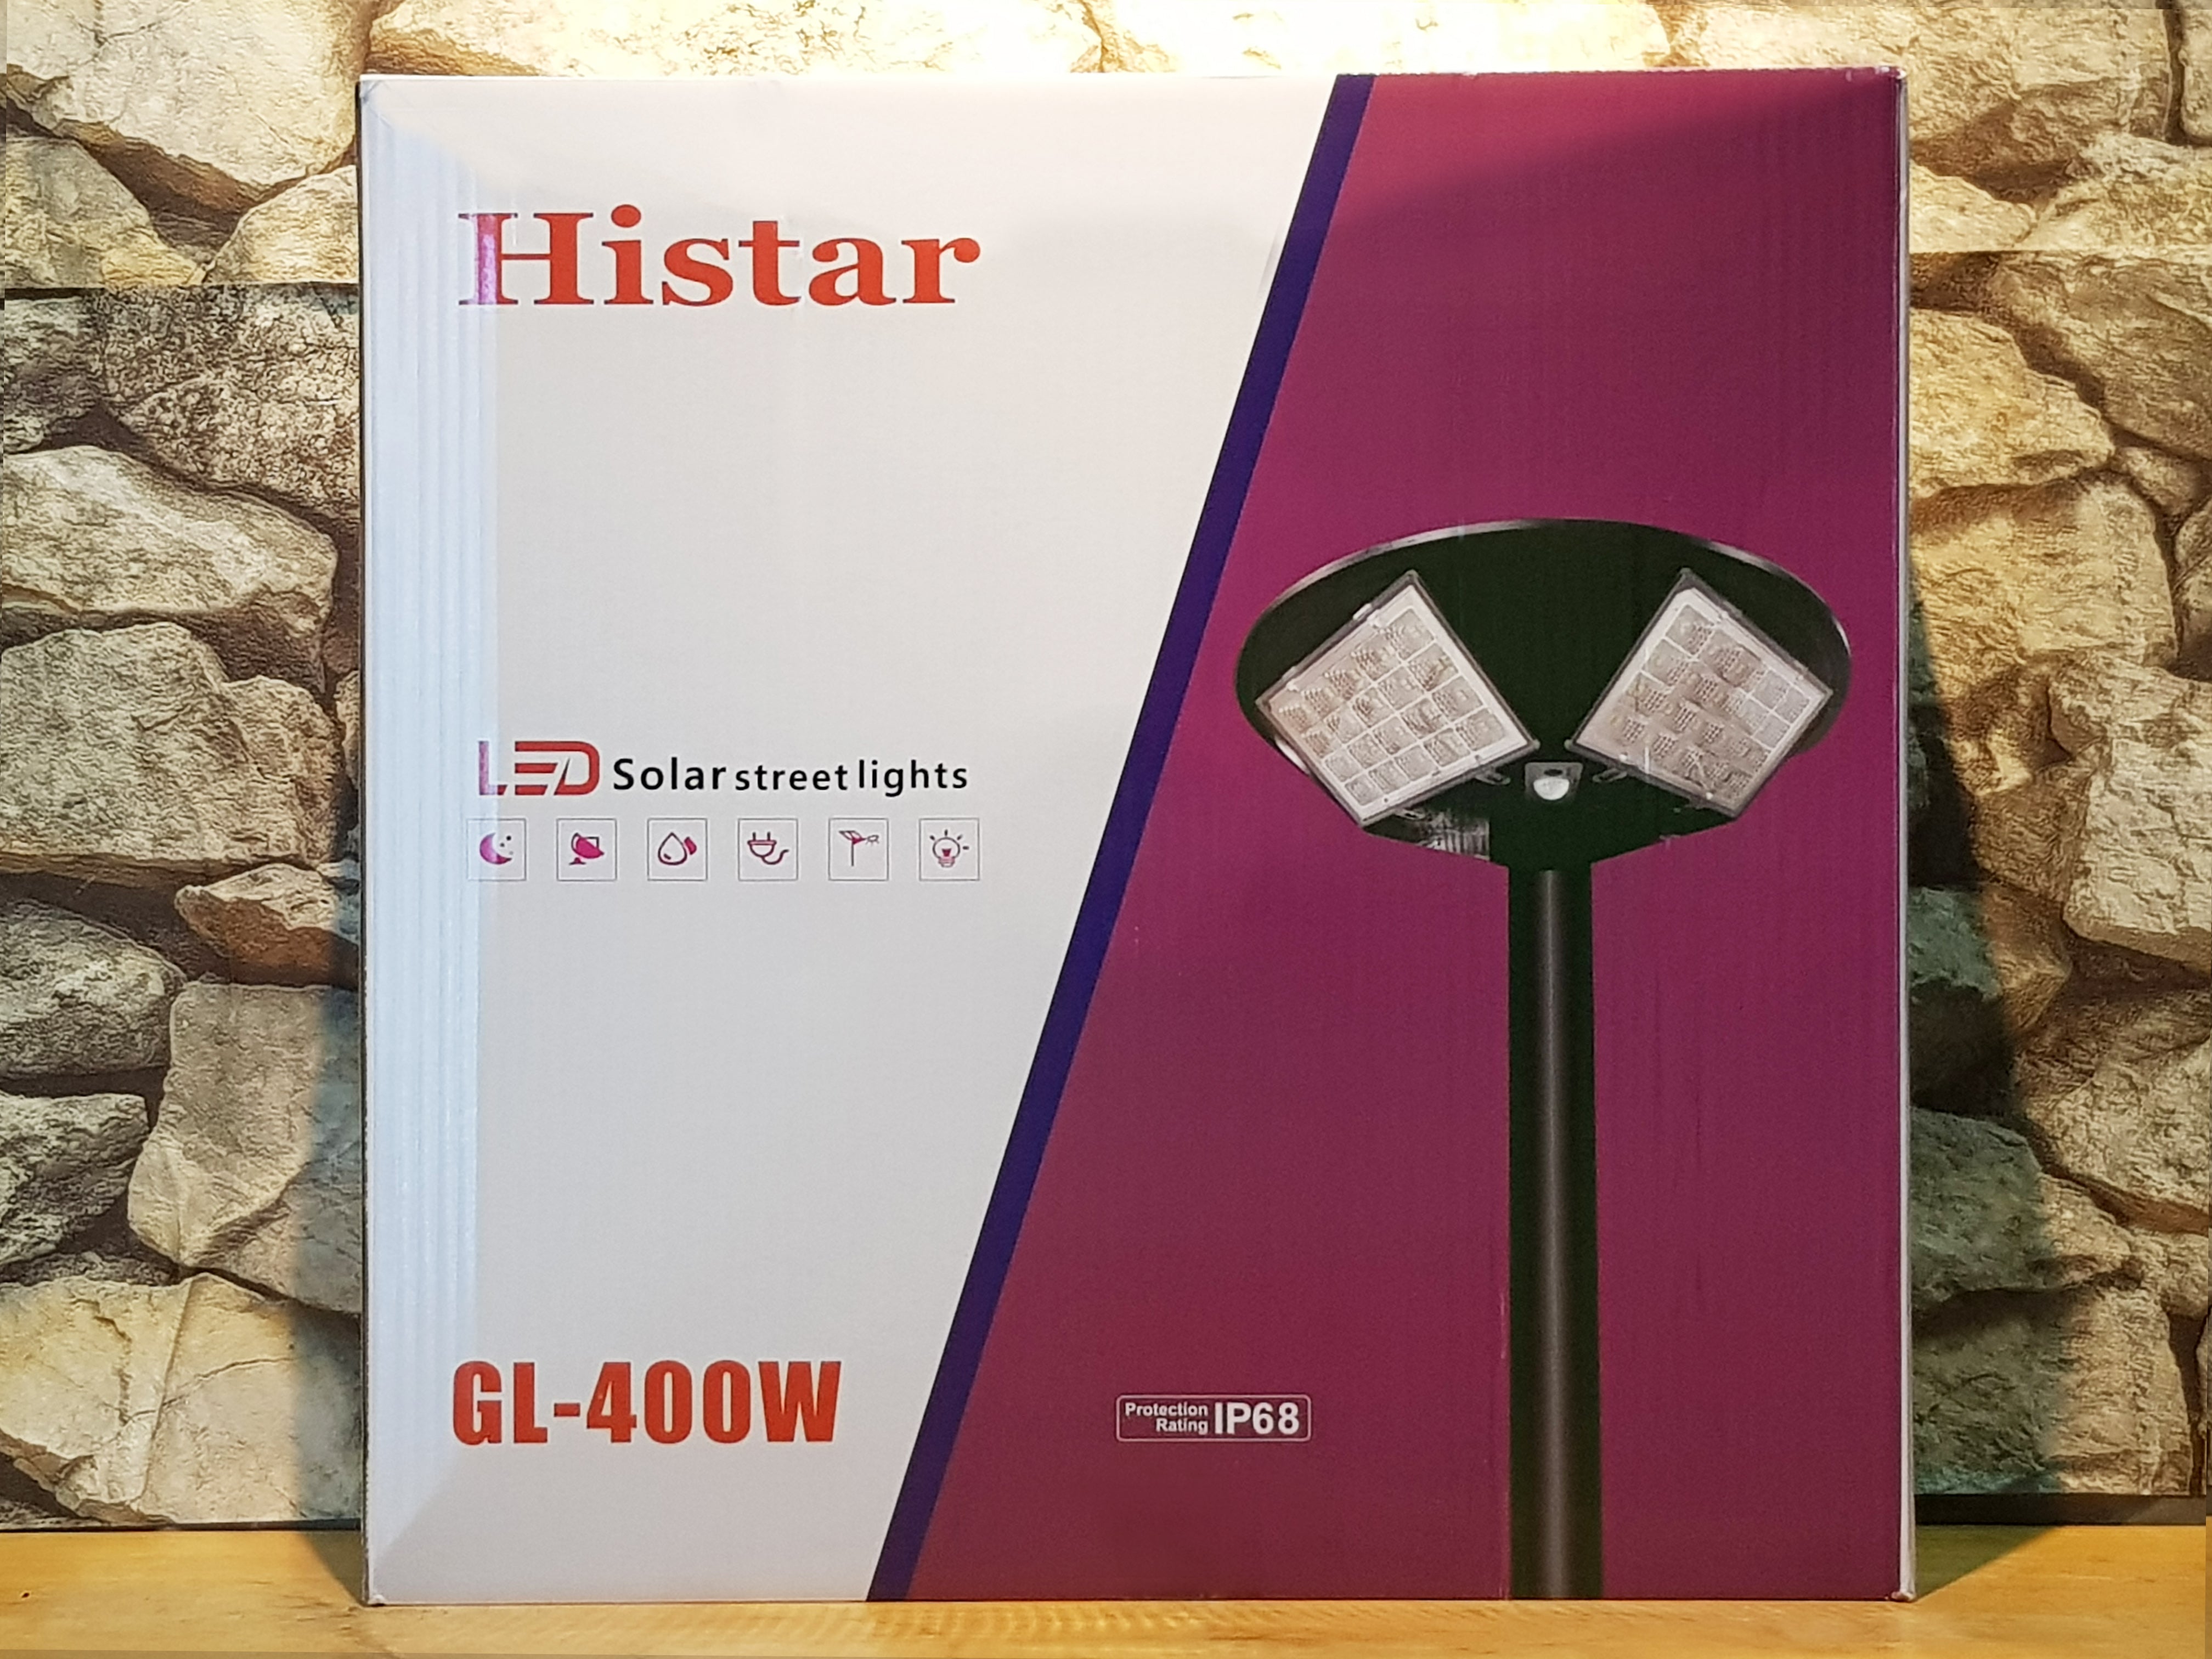 GL-400W Histar Solar street lights